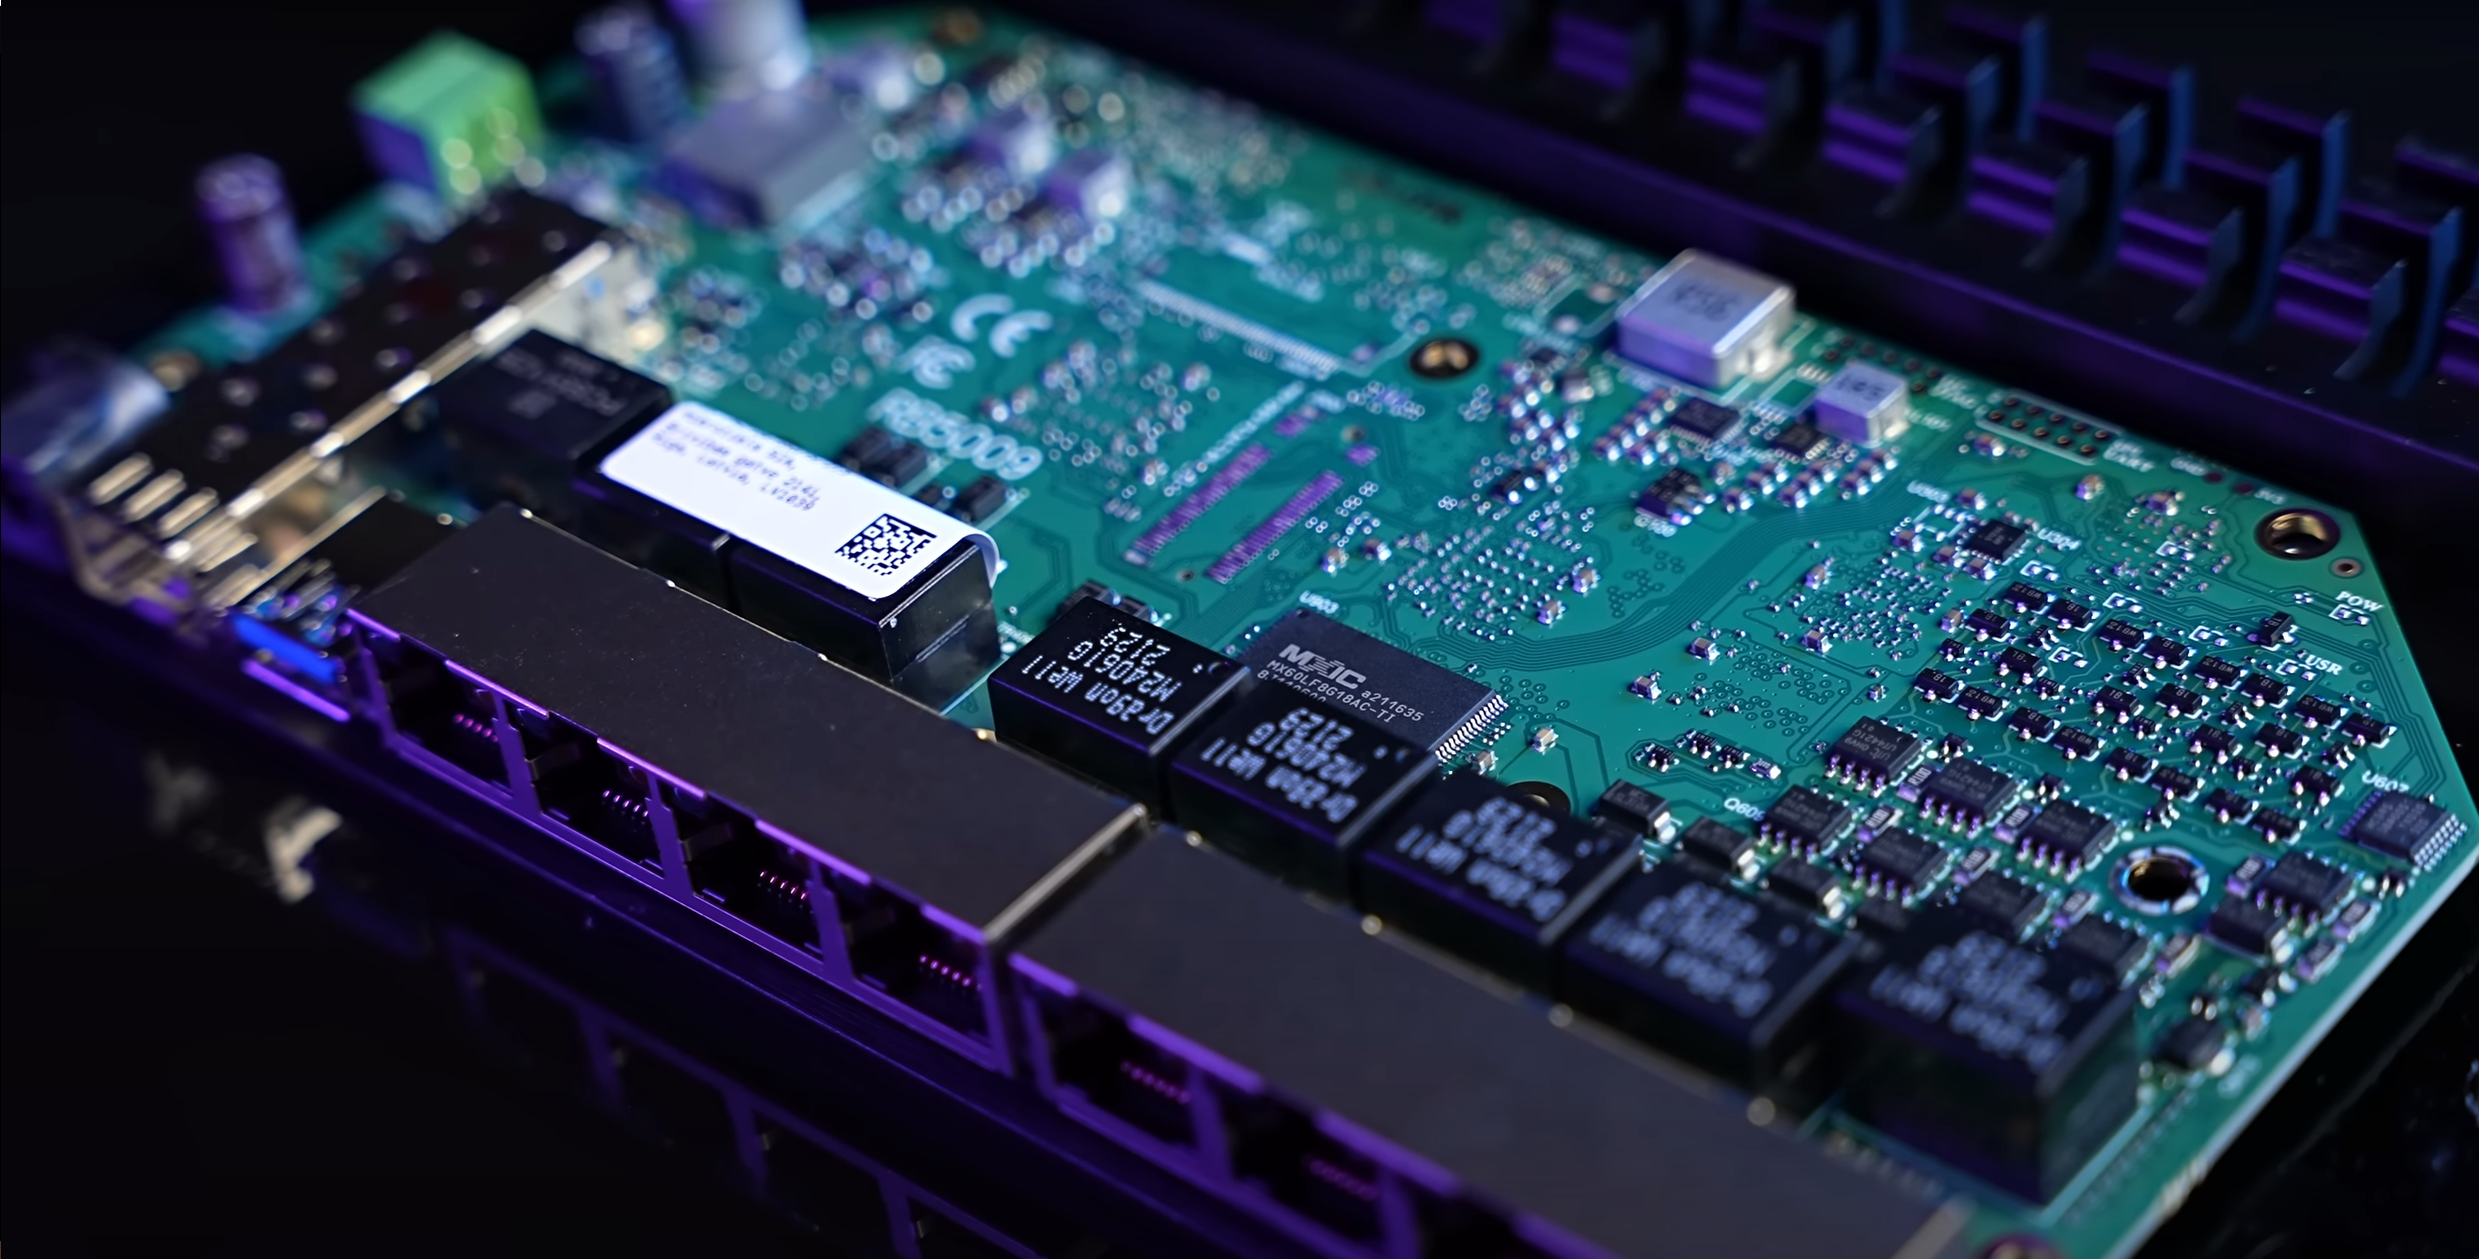 Router MikroTik RB5009 pohání 4jádrový procesor Marvell Armada 88F7040 s maximálním taktem až 1,4 GHz, kterému sekunduje 1GB paměť RAM DDR4 a 1GB interní paměť NAND.